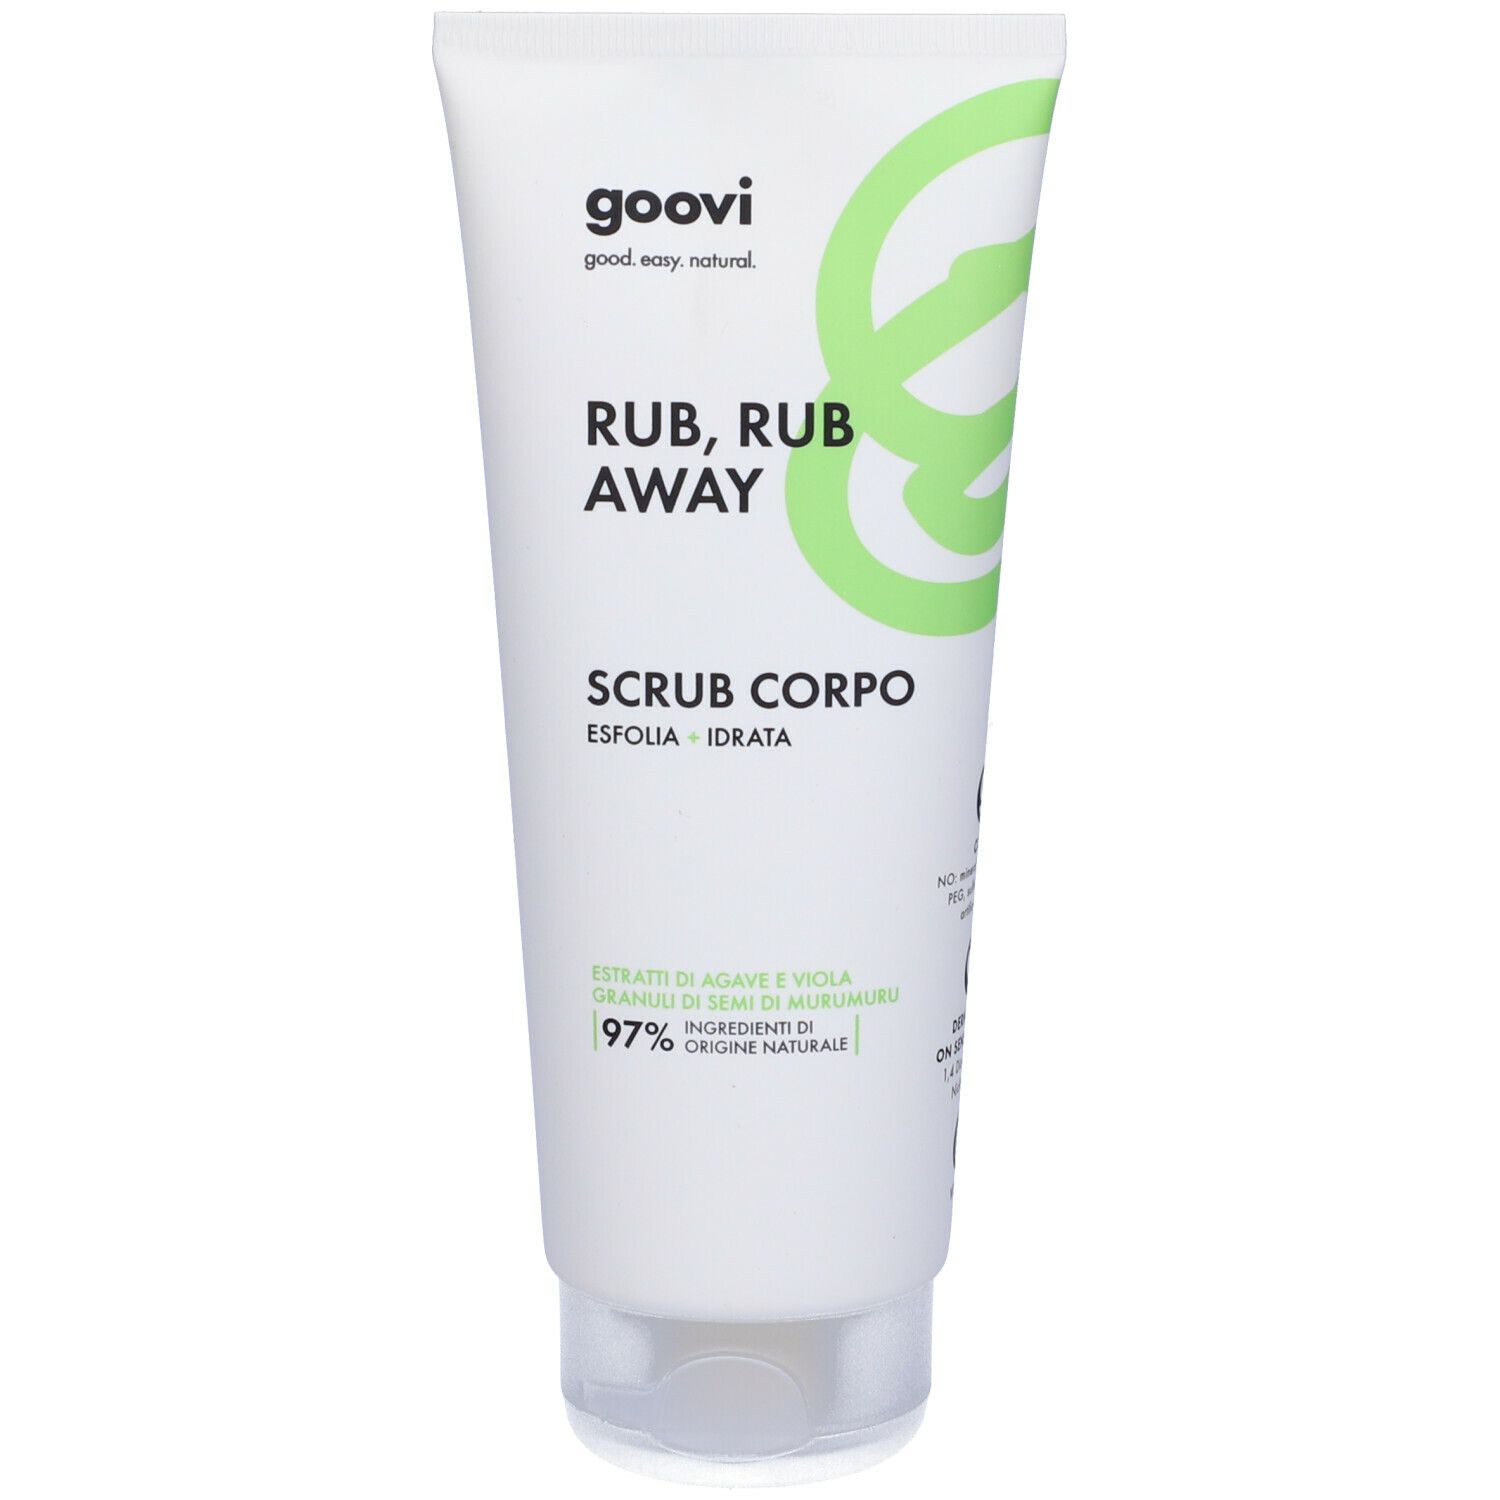 Image of Goovi Rub, Rub Away Scrub Corpo